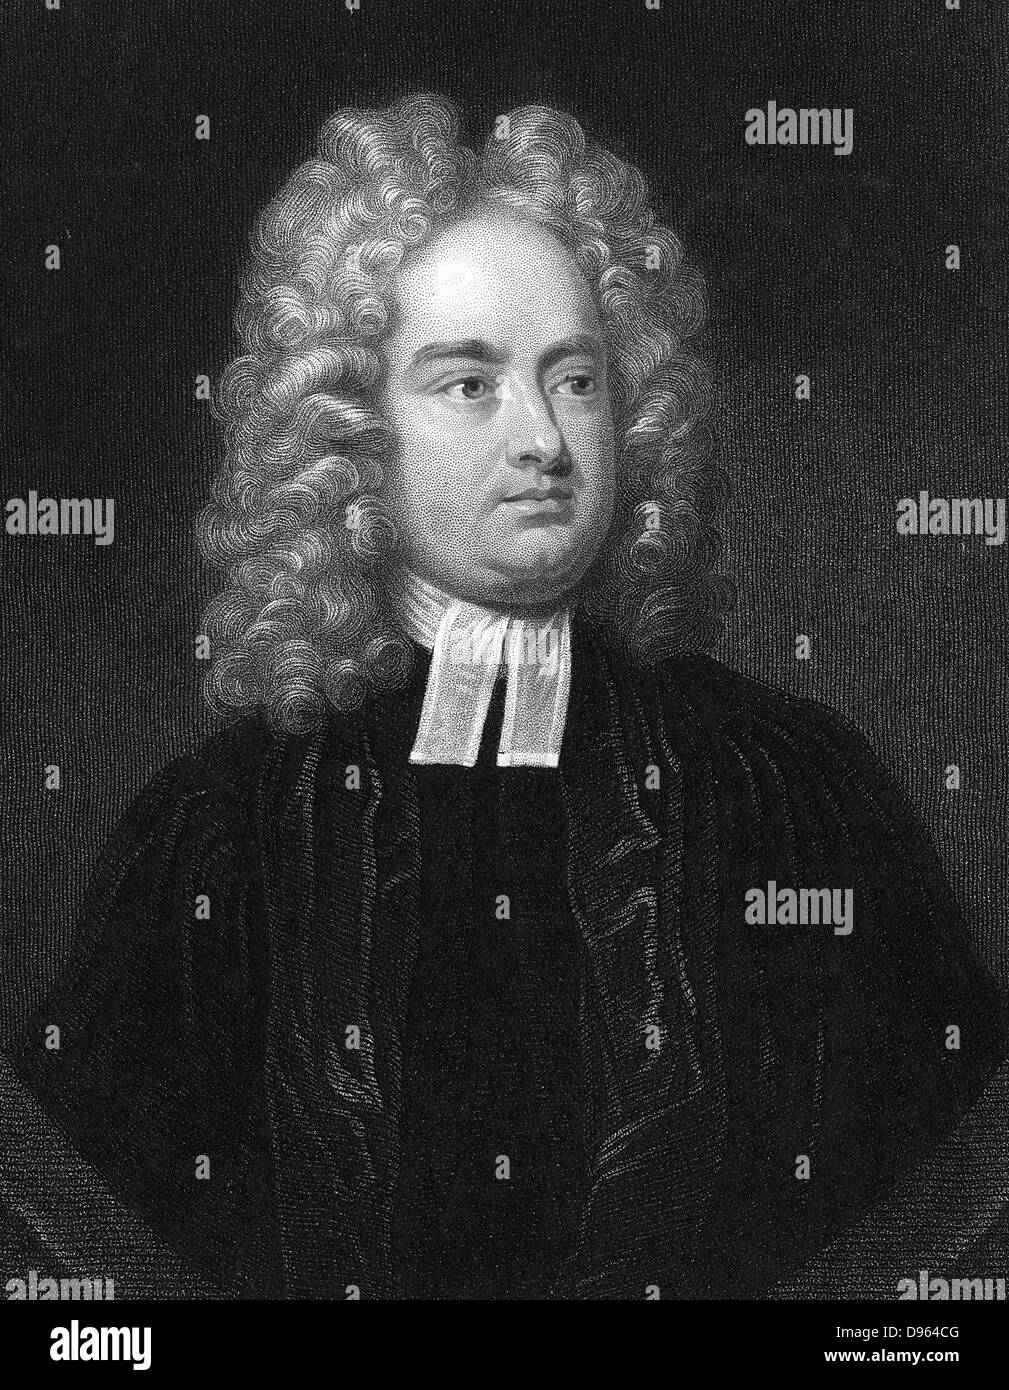 Jonathan Swift (1667-1746) clérigo angloirlandés, humorista y poeta. Autor de "los viajes de Gulliver' 1726 "Batalla de los libros" y "Un cuento de la bañera" 1704. Grabado Foto de stock